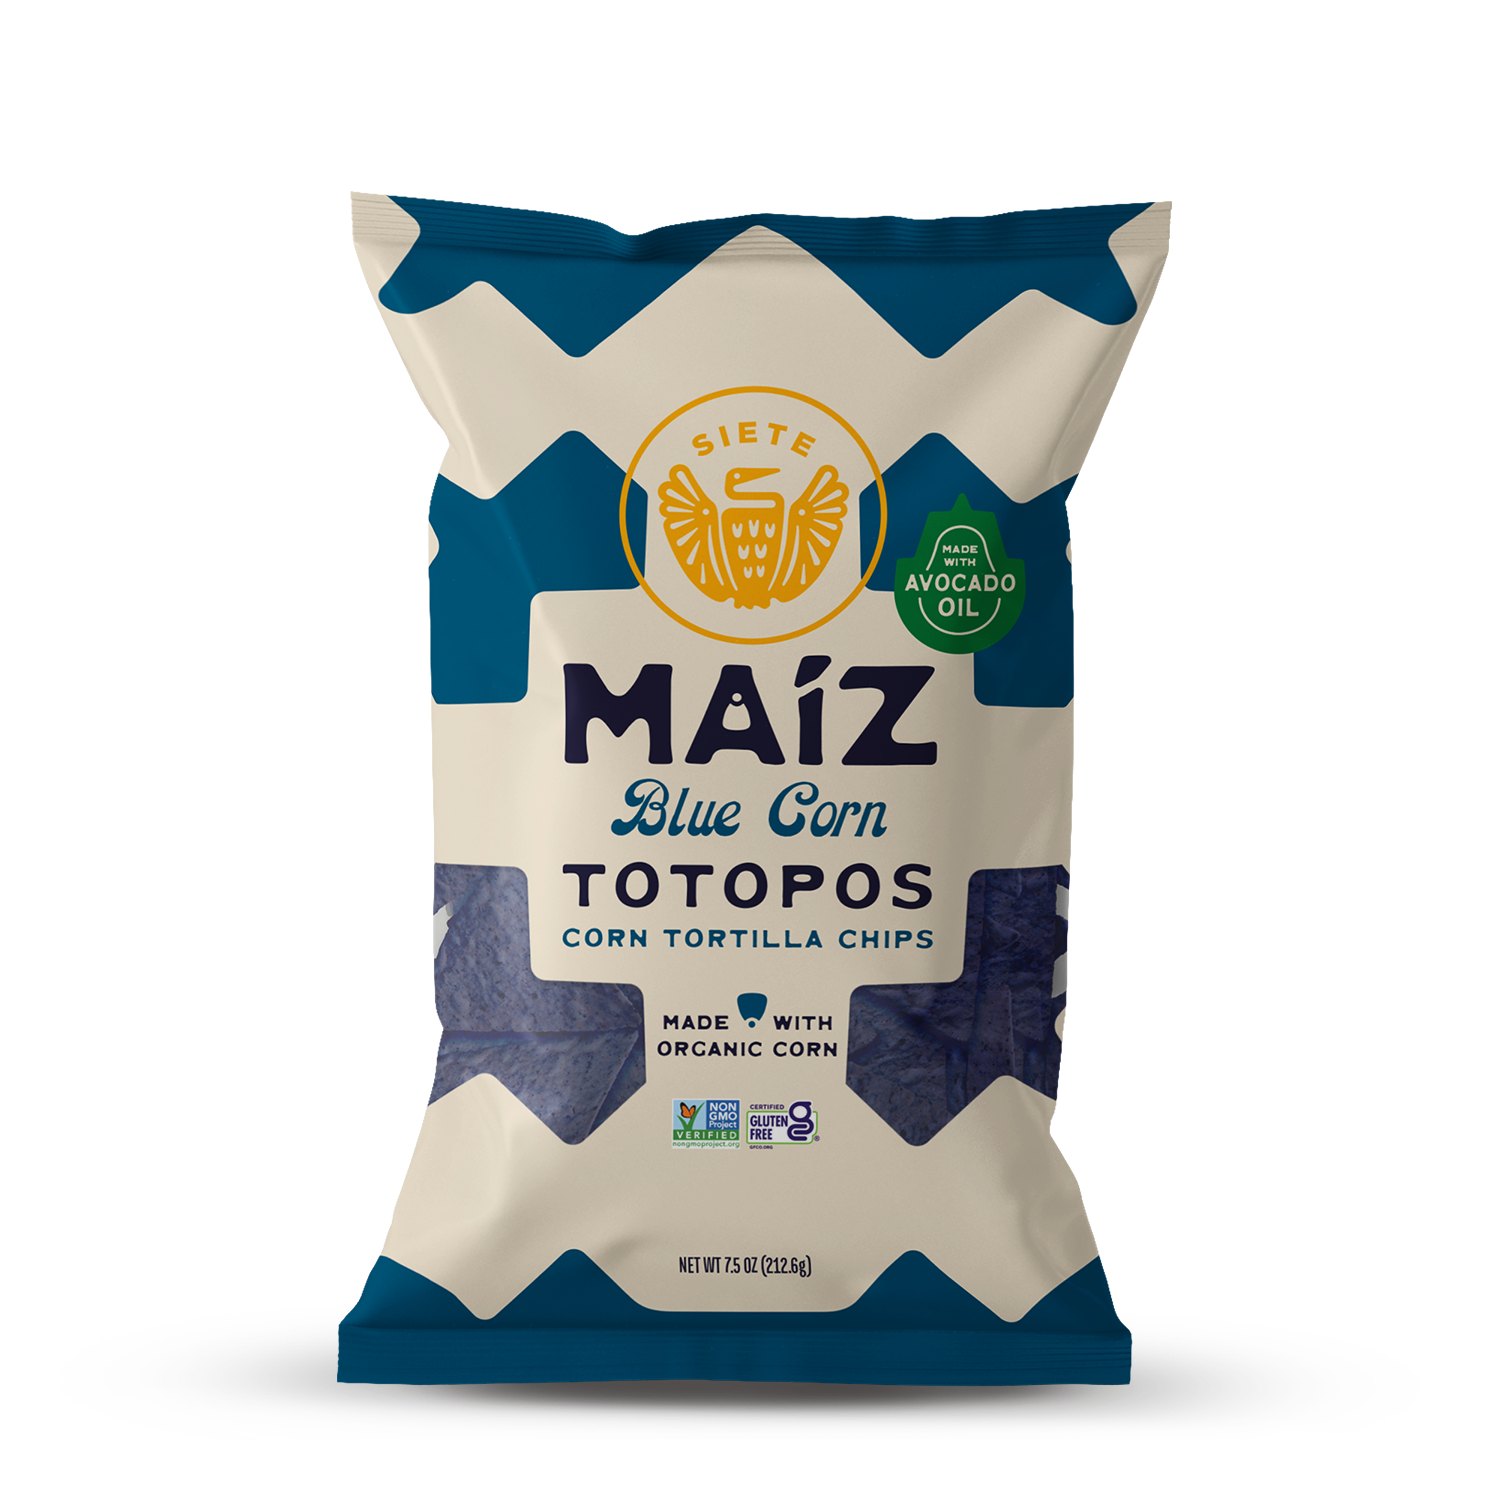 Maíz Blue Corn Totopos Tortilla Chips 7.5oz - 6 Bags